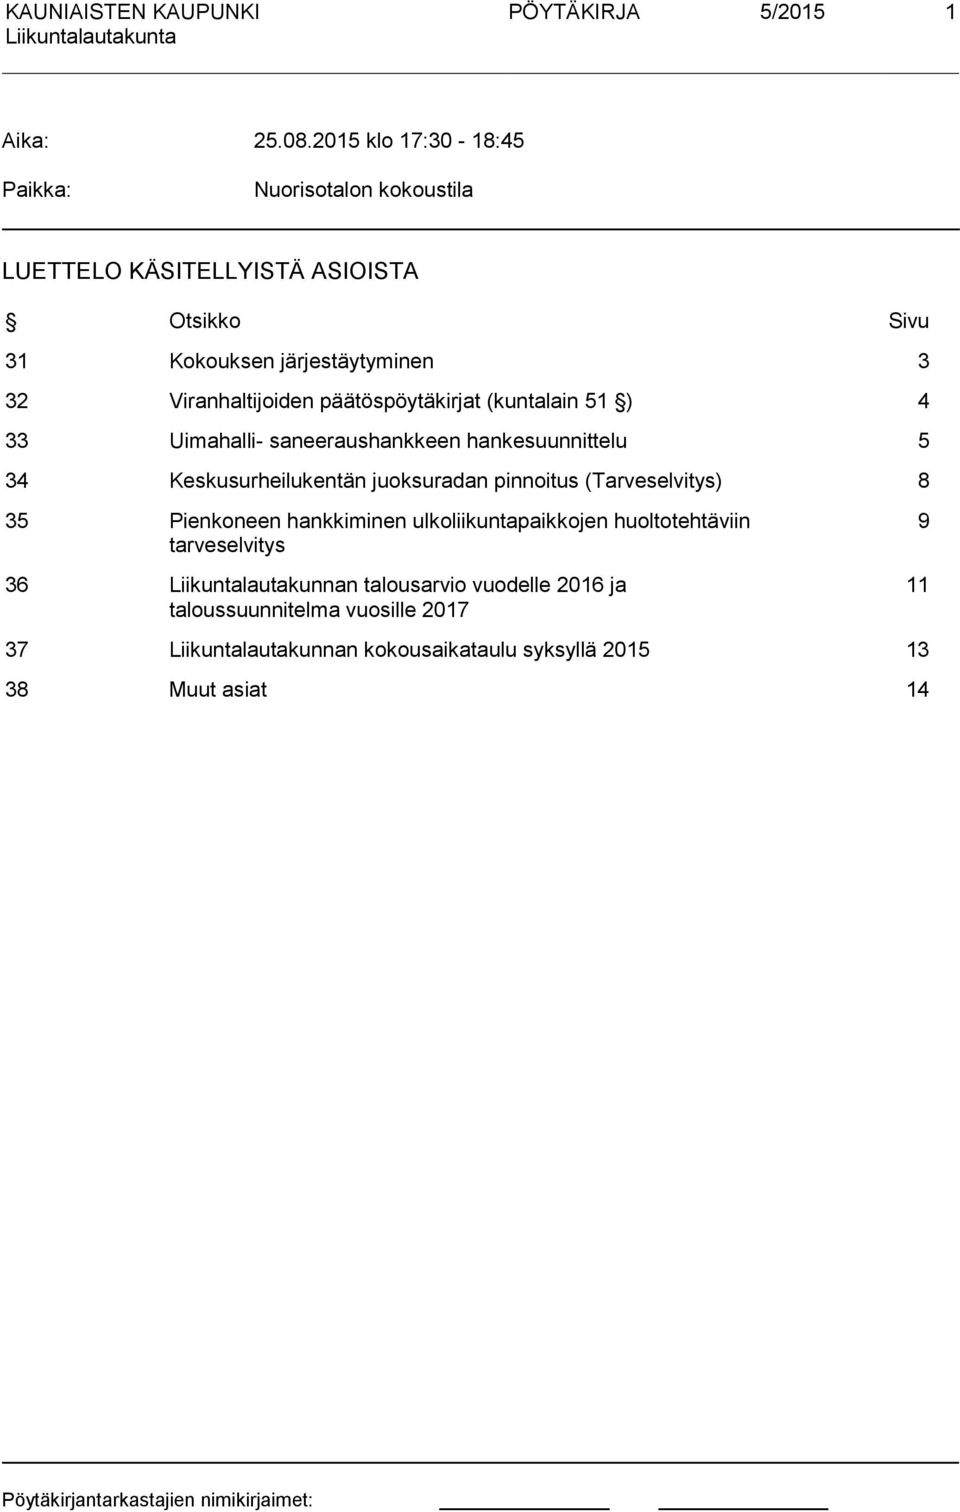 Viranhaltijoiden päätöspöytäkirjat (kuntalain 51 ) 4 33 Uimahalli- saneeraushankkeen hankesuunnittelu 5 34 Keskusurheilukentän juoksuradan